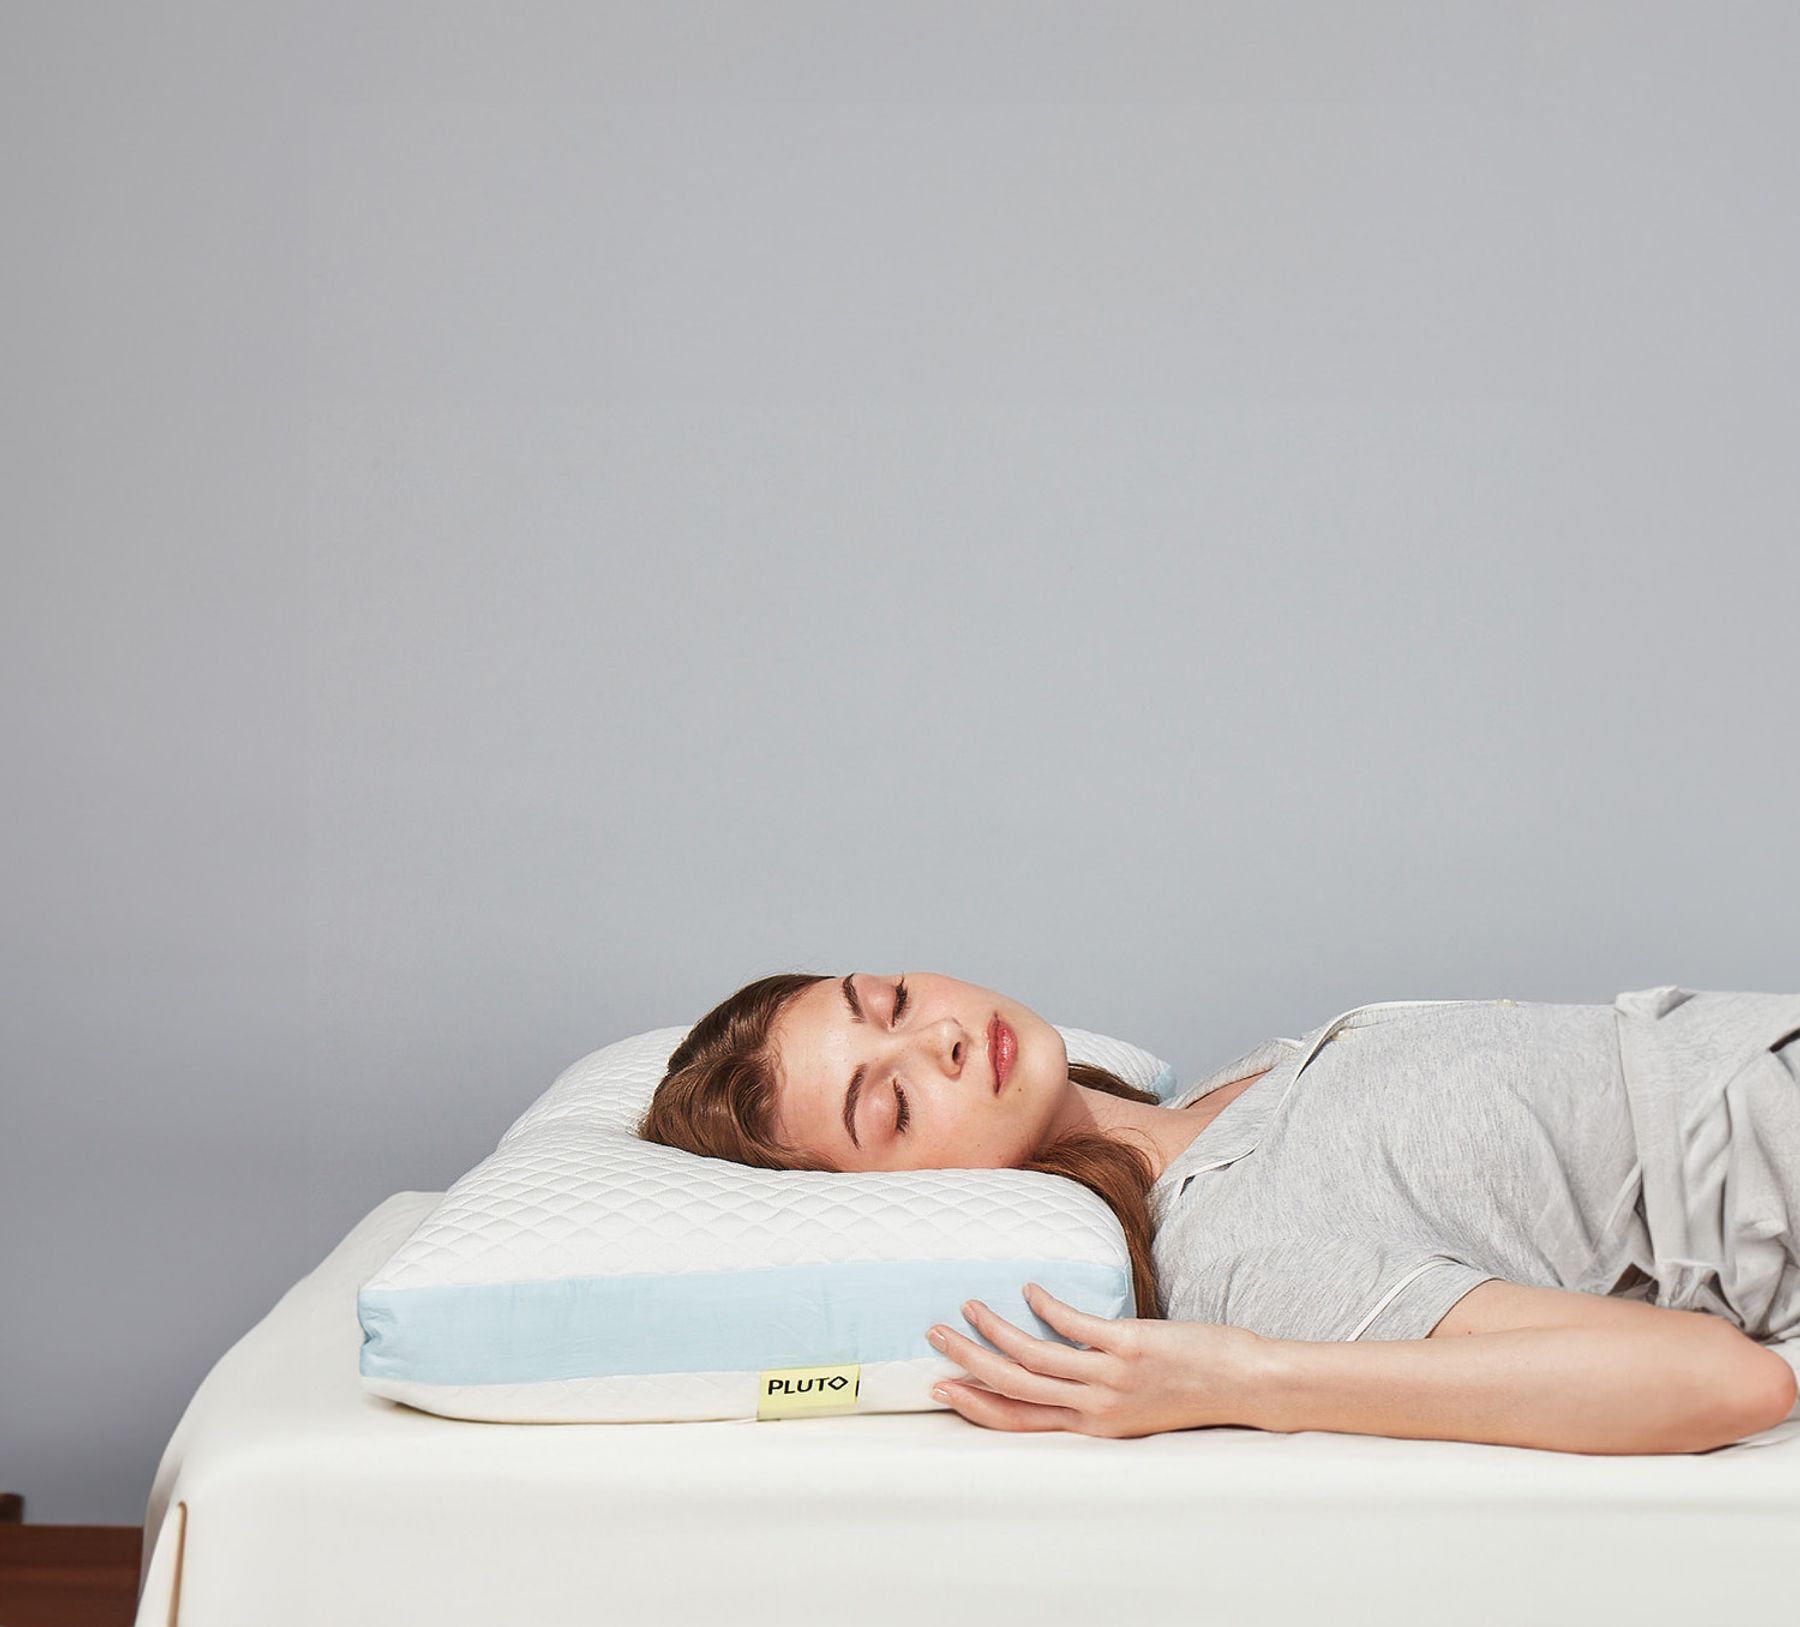 Best Pillows for Side Sleepers (2023) - Mattress Nerd